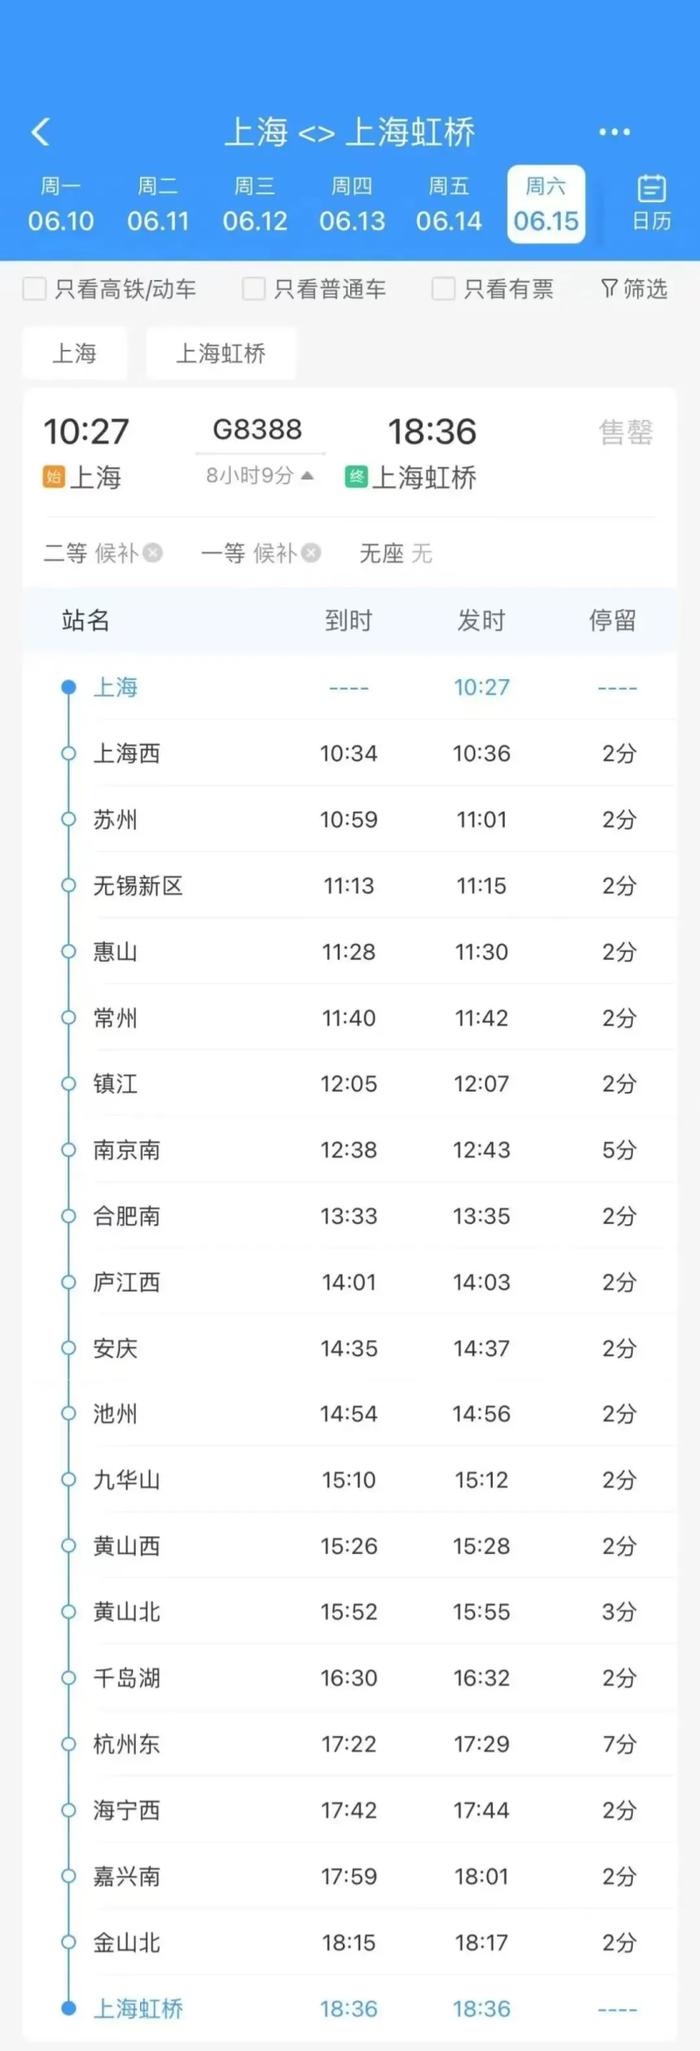 上海至上海虹桥超级环线高铁将发车，串联4座城市